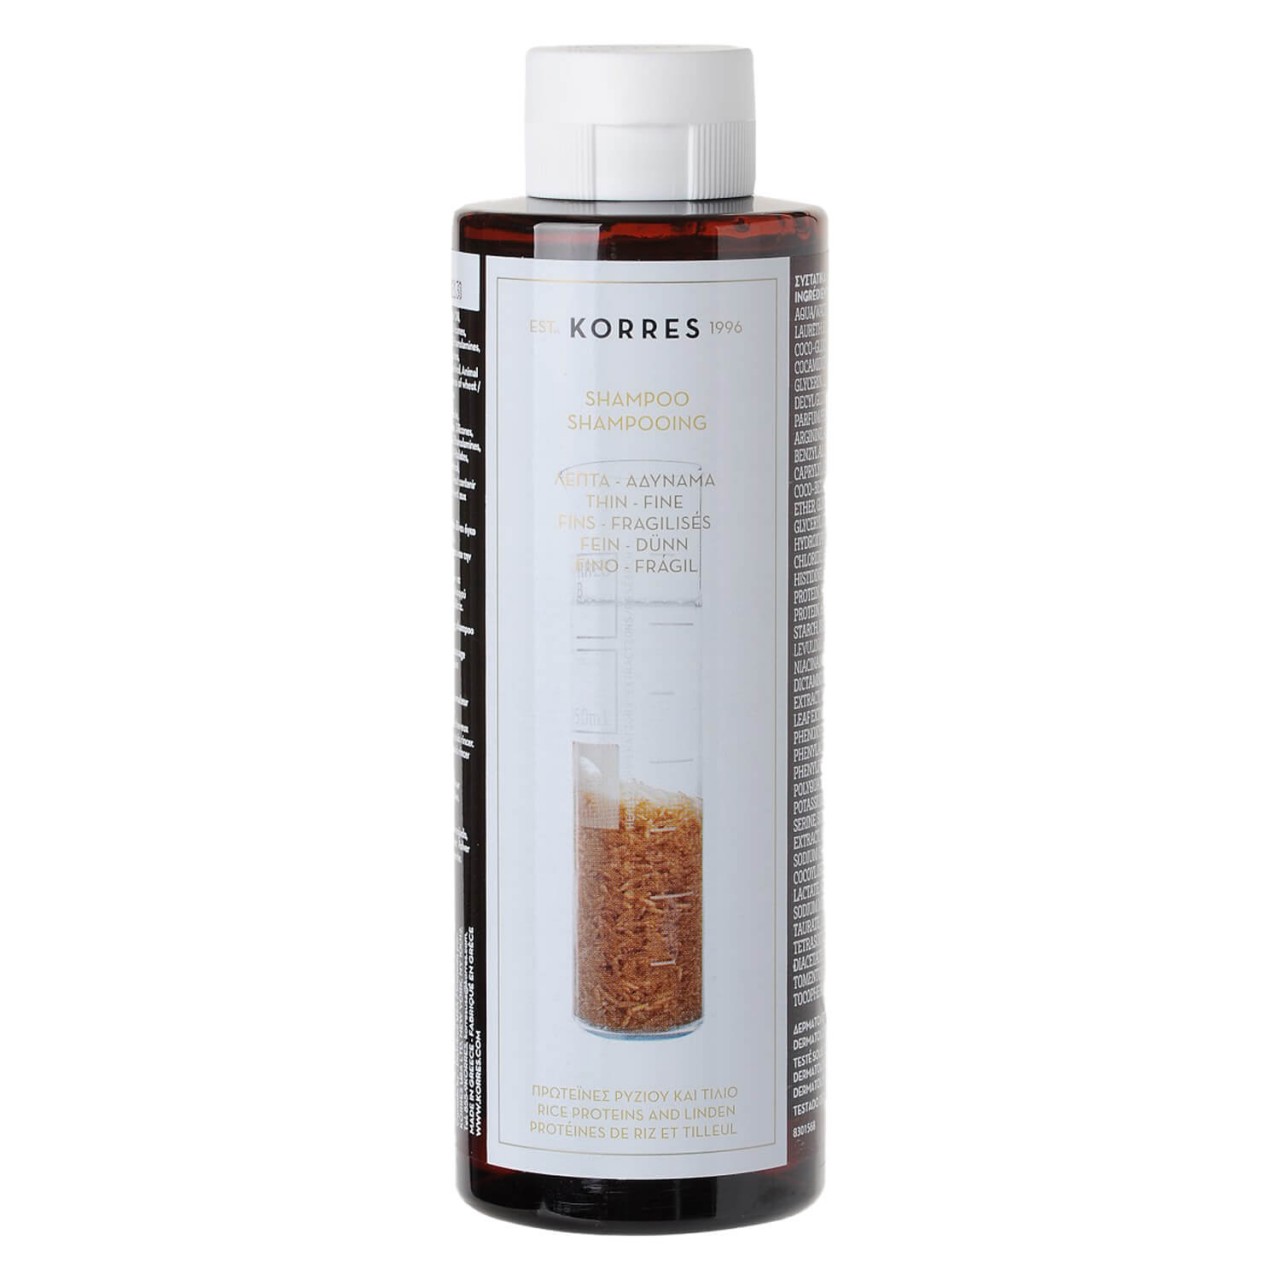 Korres Haircare - Rice Proteins & Linden Shampoo von Korres